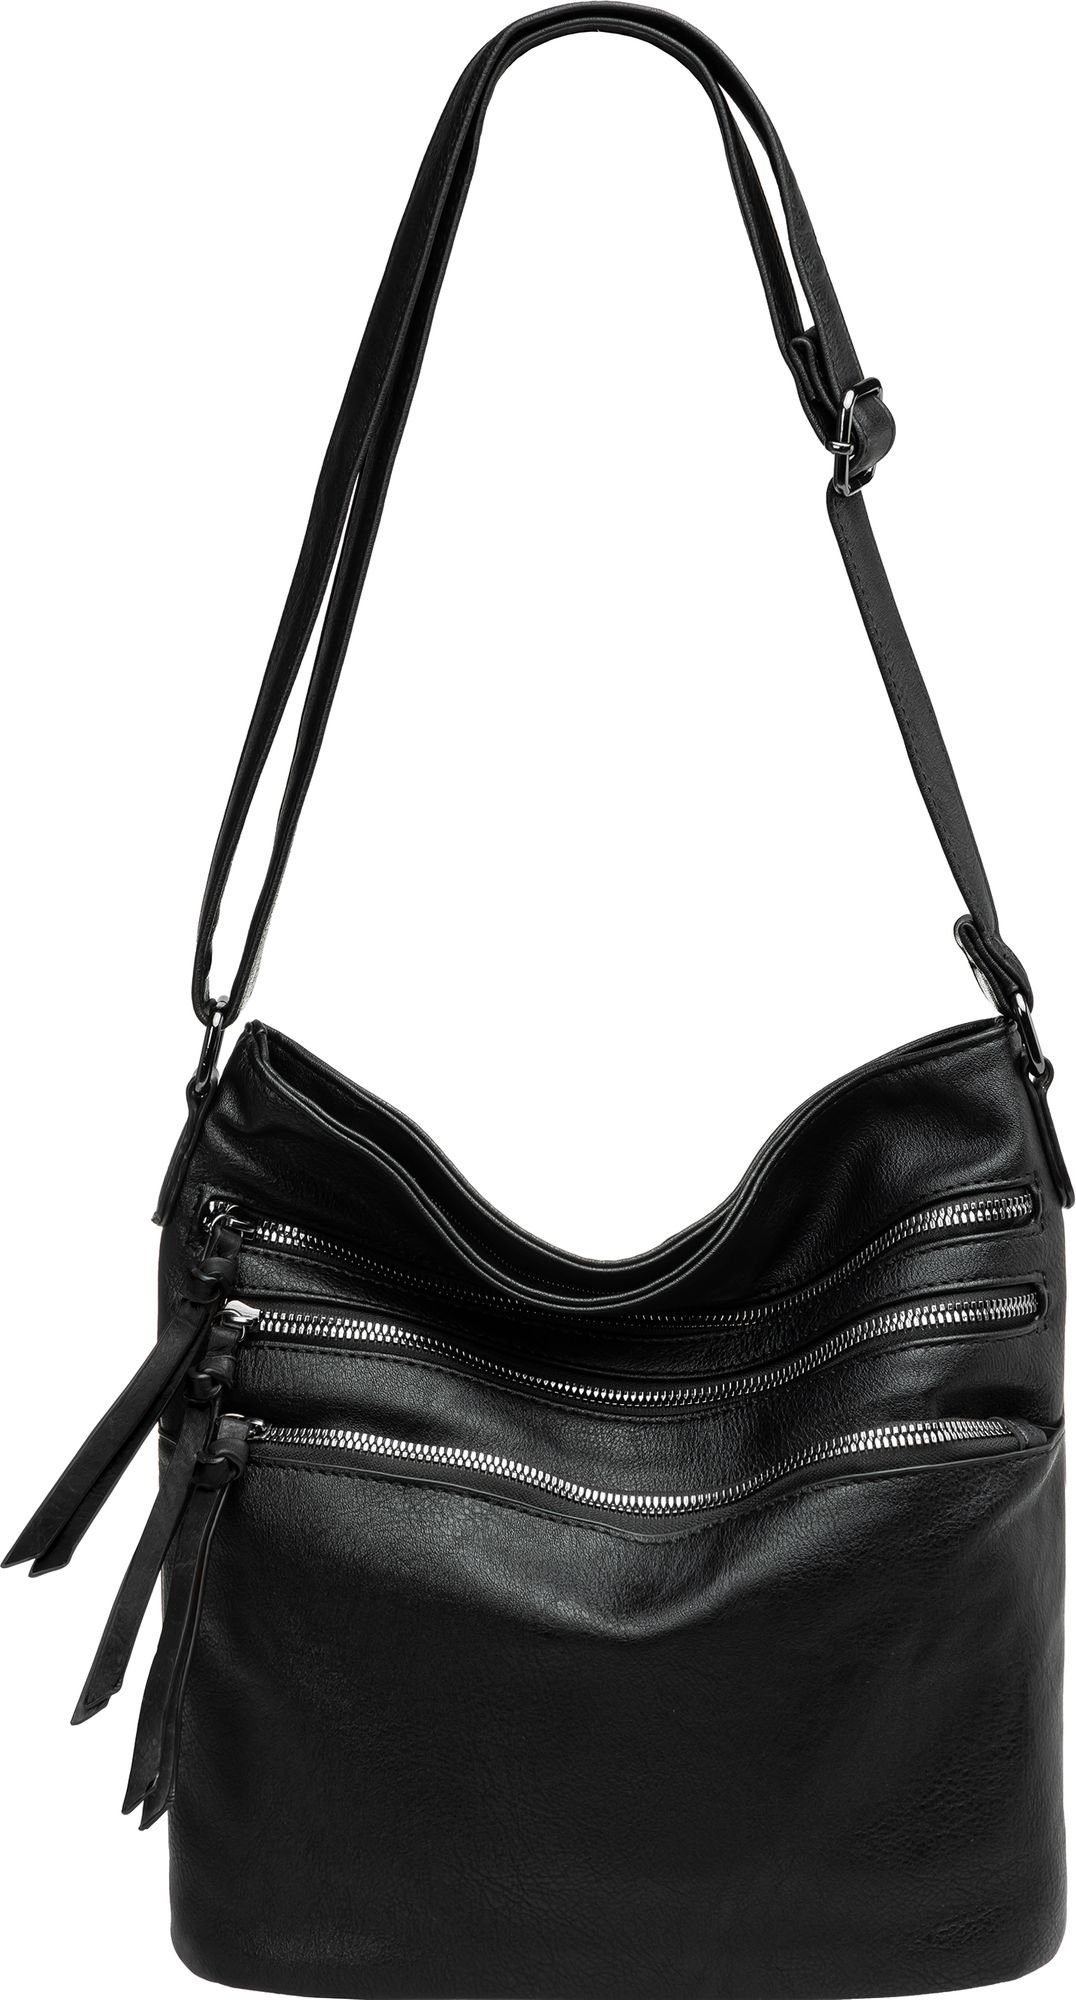 Caspar Umhängetasche TS1071 sportlich elegante mittelgroße Damen Crossbody Bag Umhängetasche schwarz